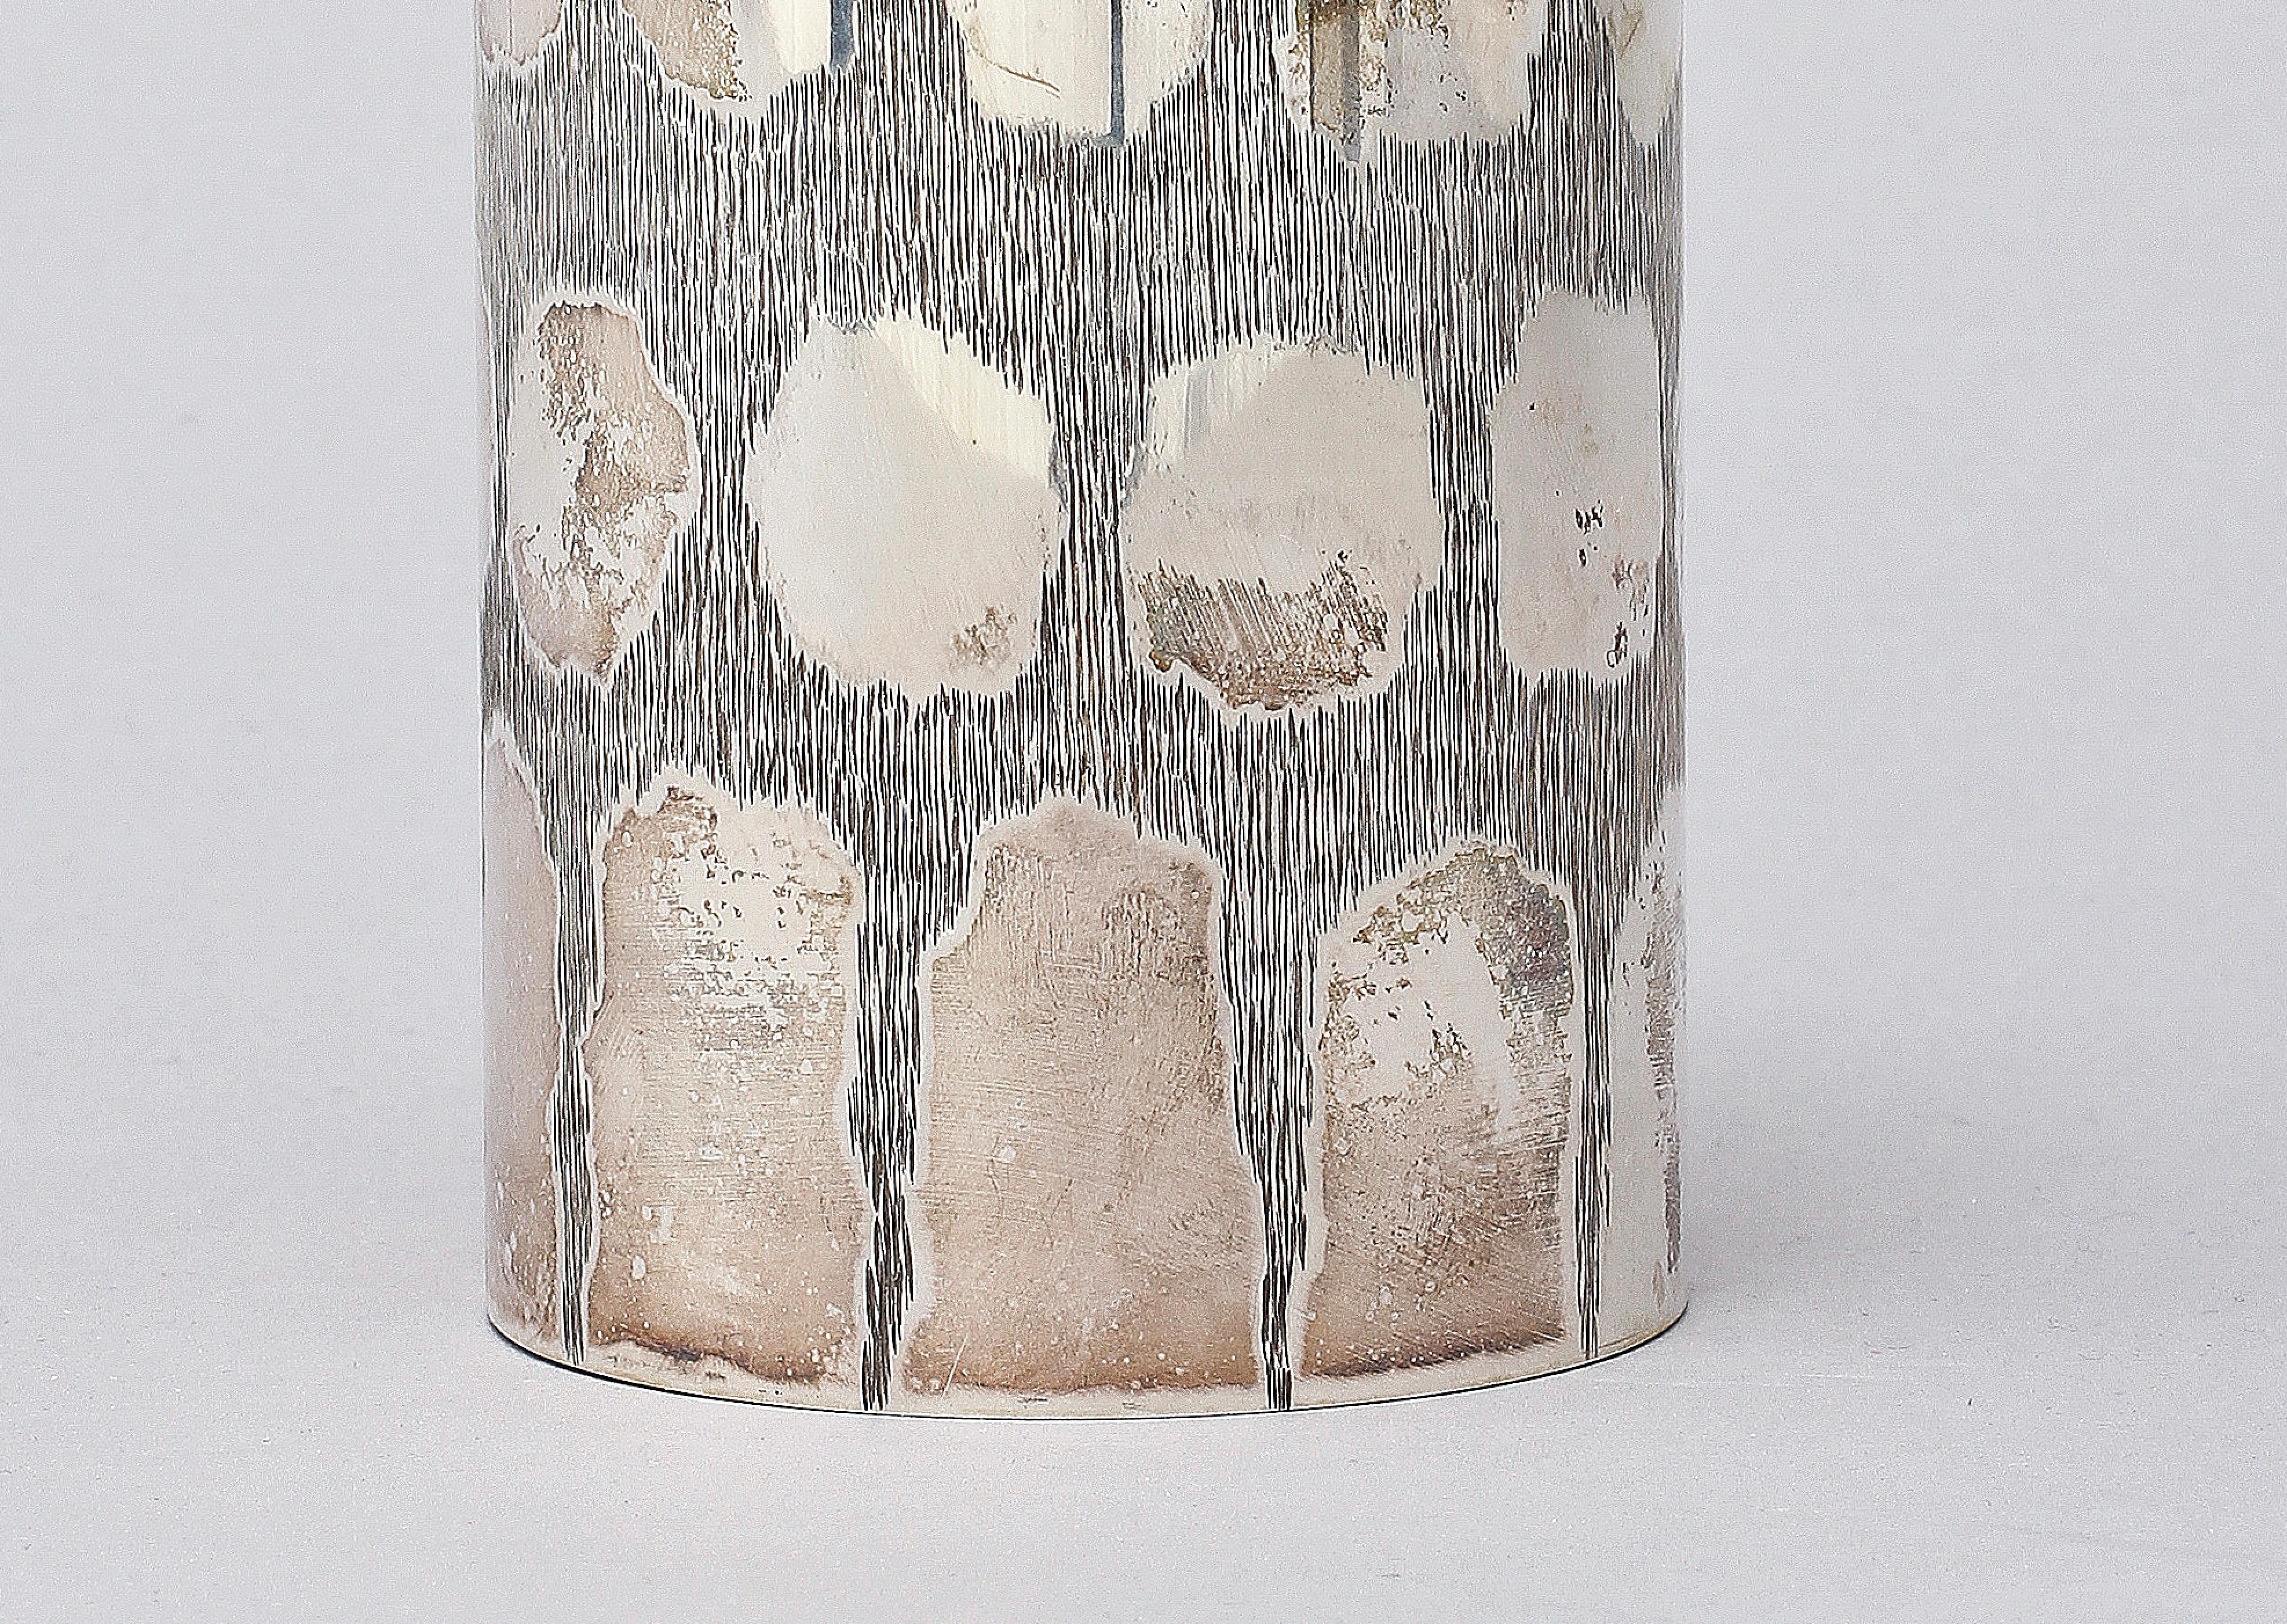 Un vase en argent sterling fabriqué en Suède dans les années 60 par Gewe malmo.
peut servir de vase ou de plumier 
Sculptée à la main, en bon état.
 